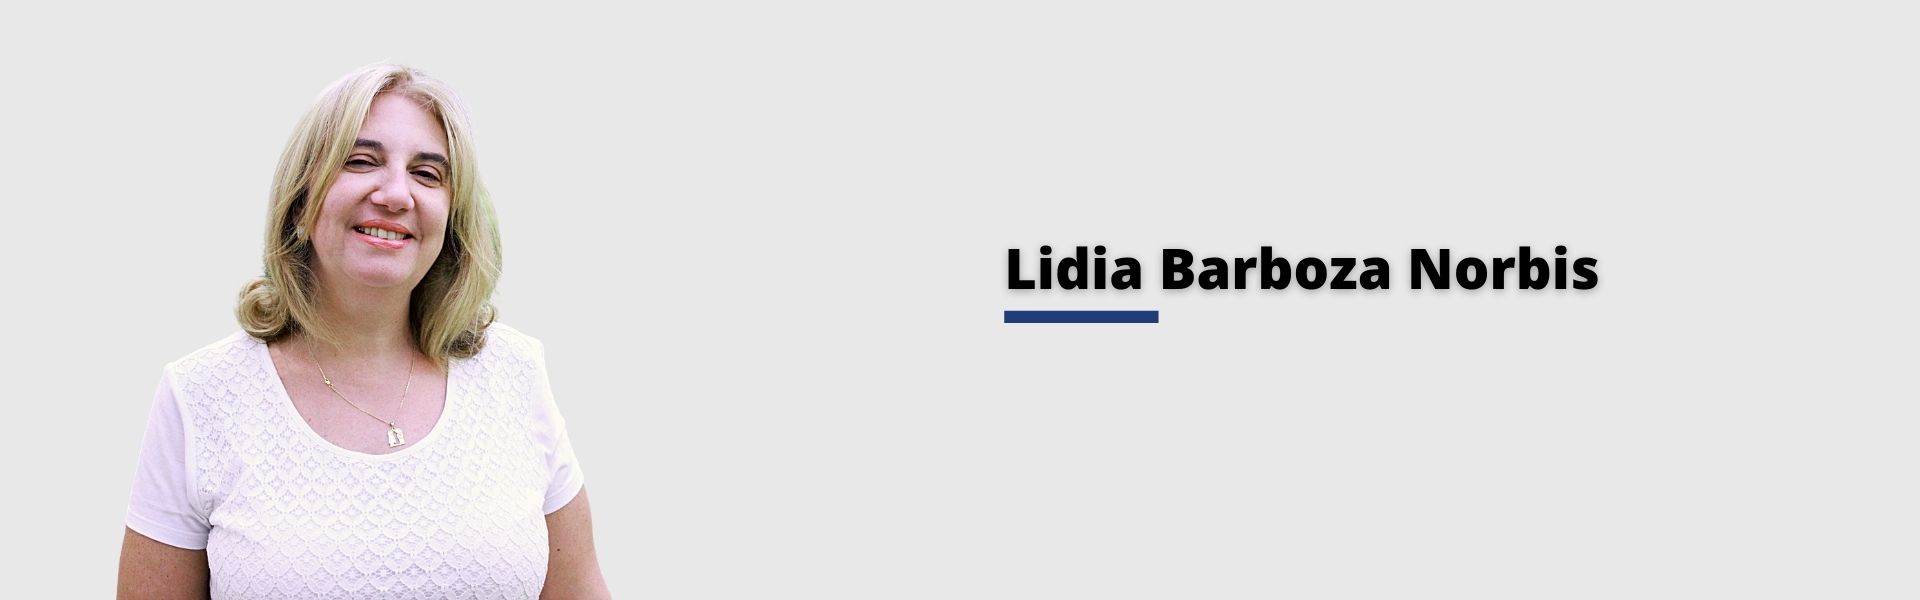 Lidia Barboza Norbis